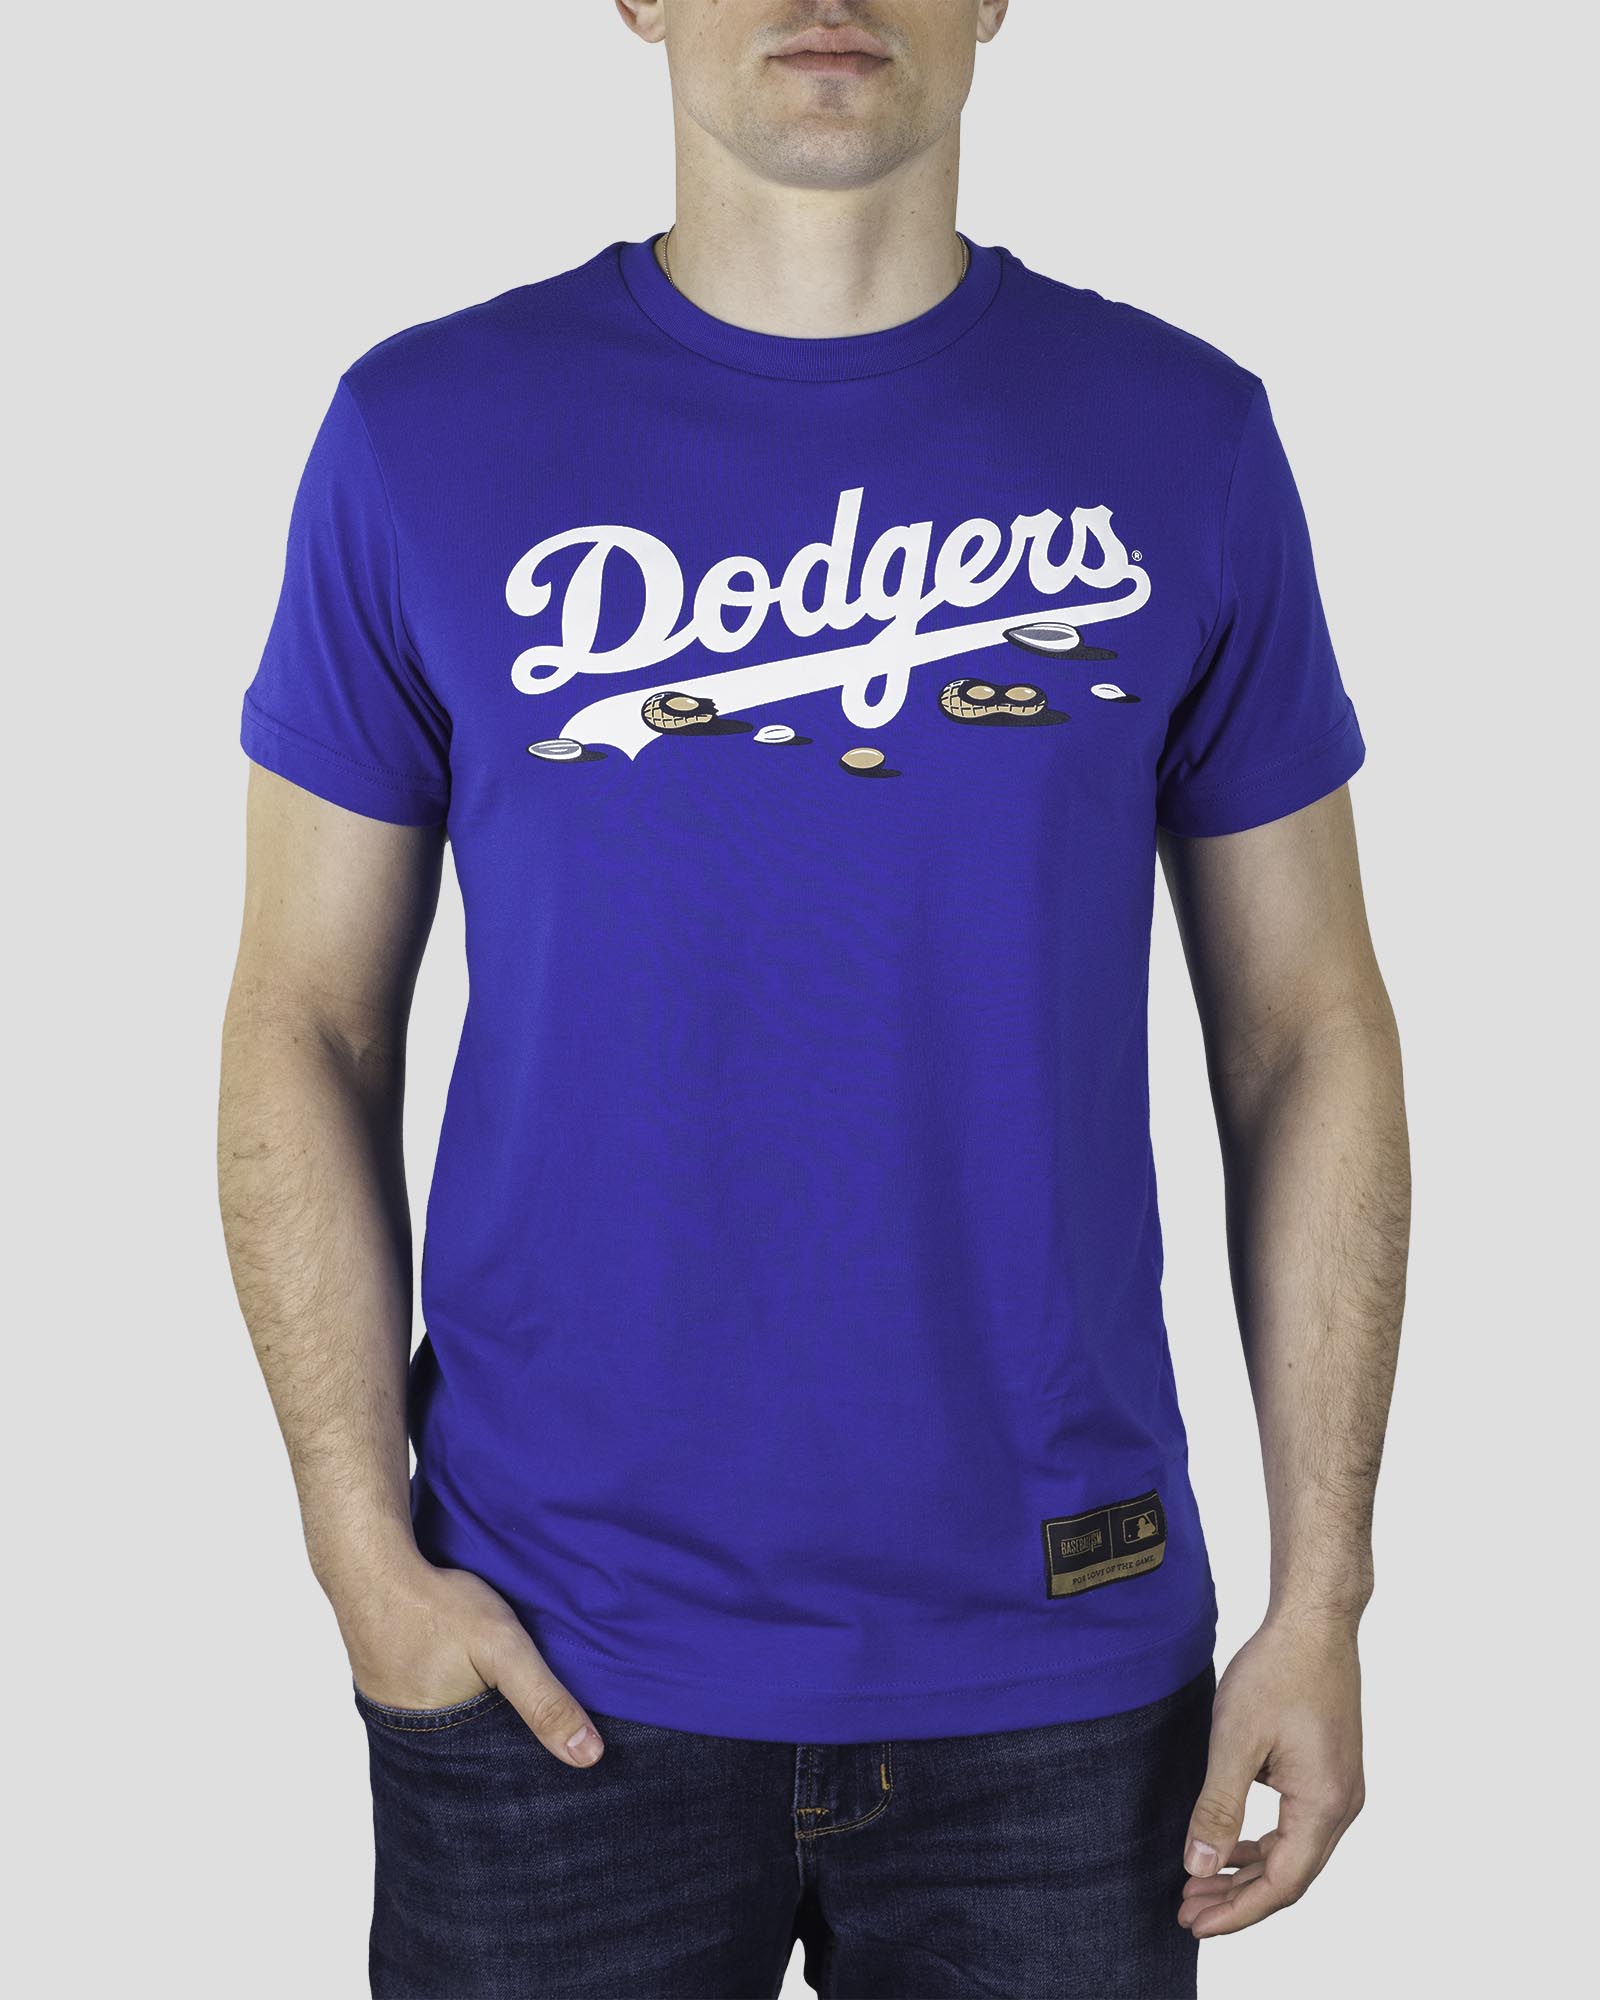 t shirt baseball dodgers